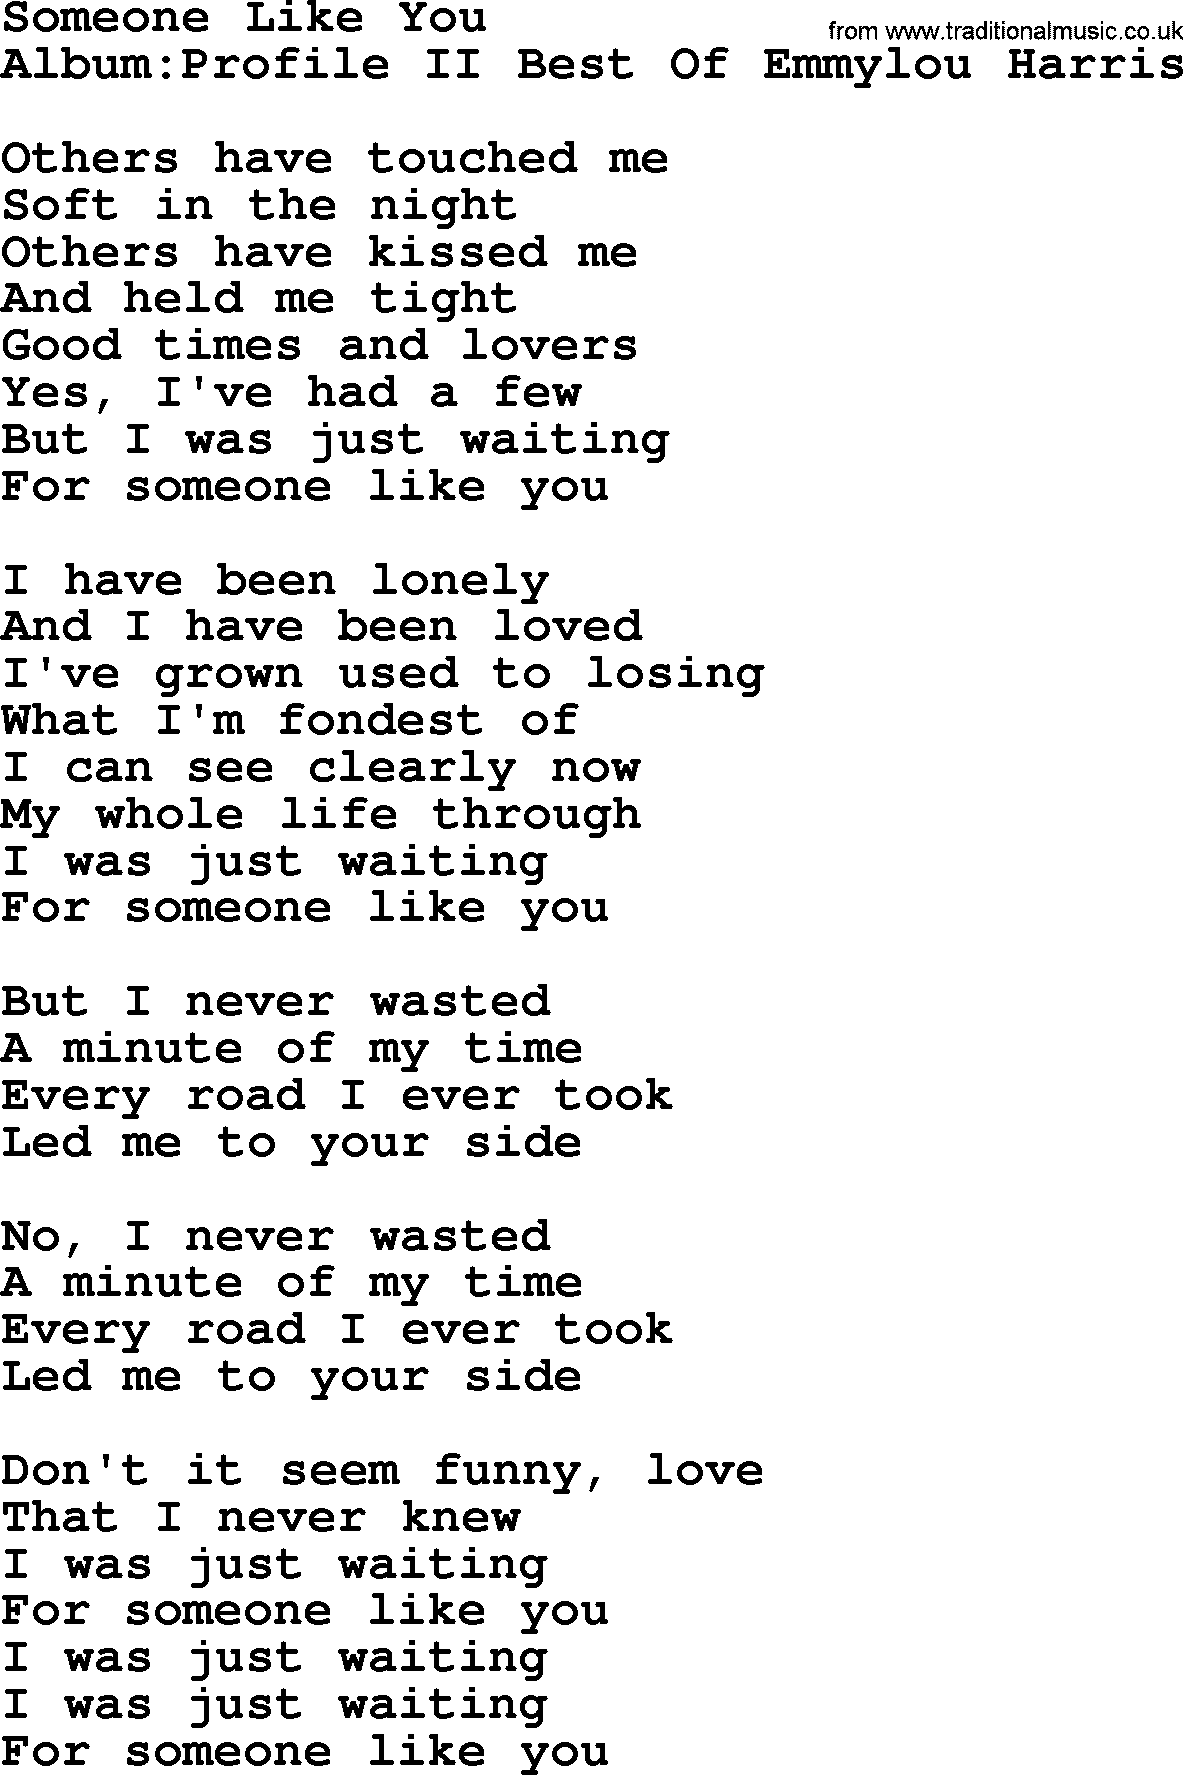 Emmylou Harris song: Someone Like You lyrics